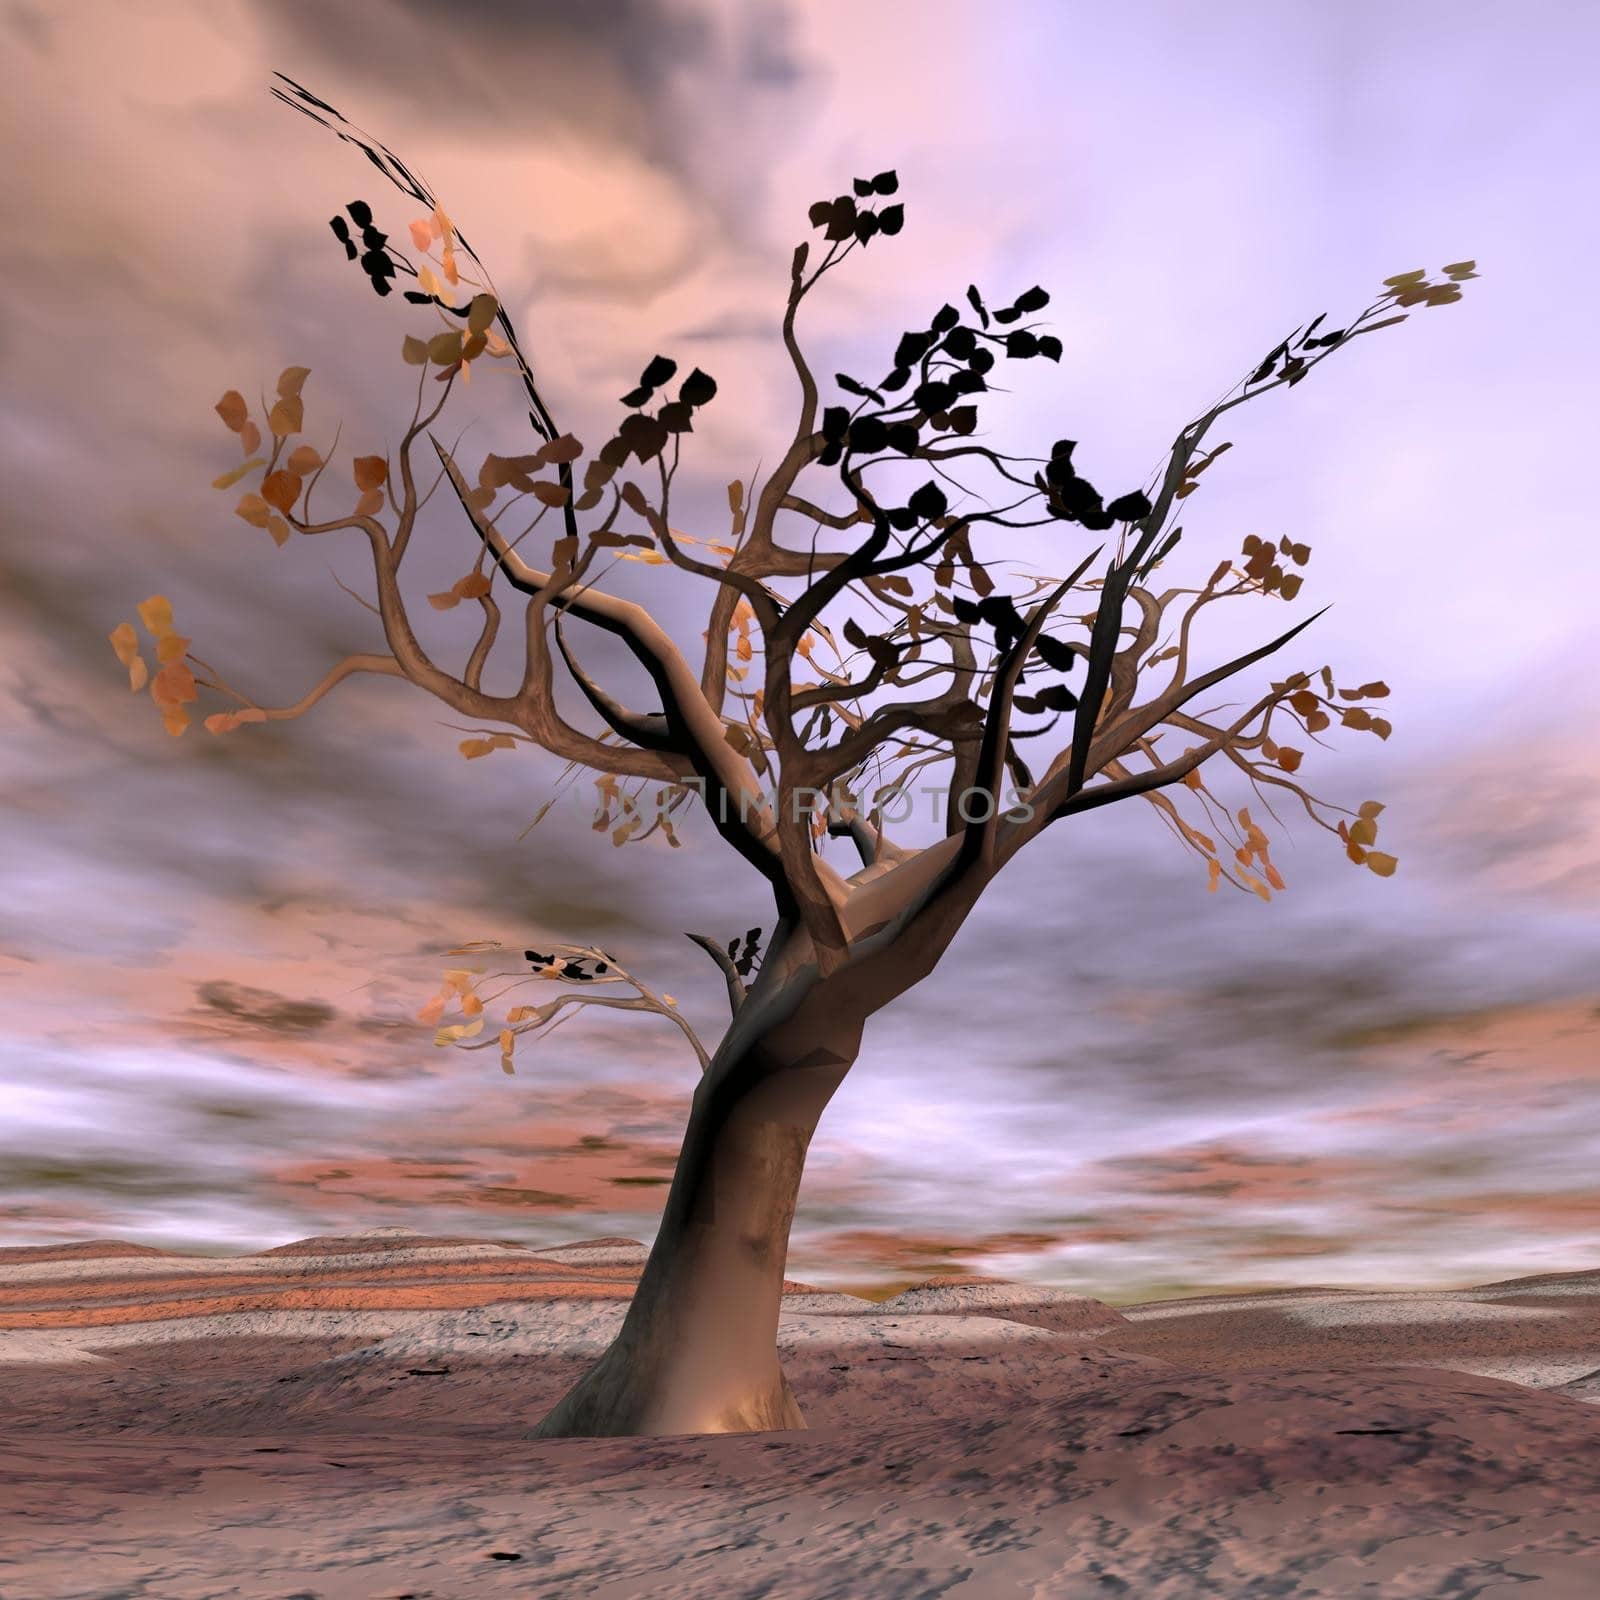 Fantasy tree - 3D render by Elenaphotos21